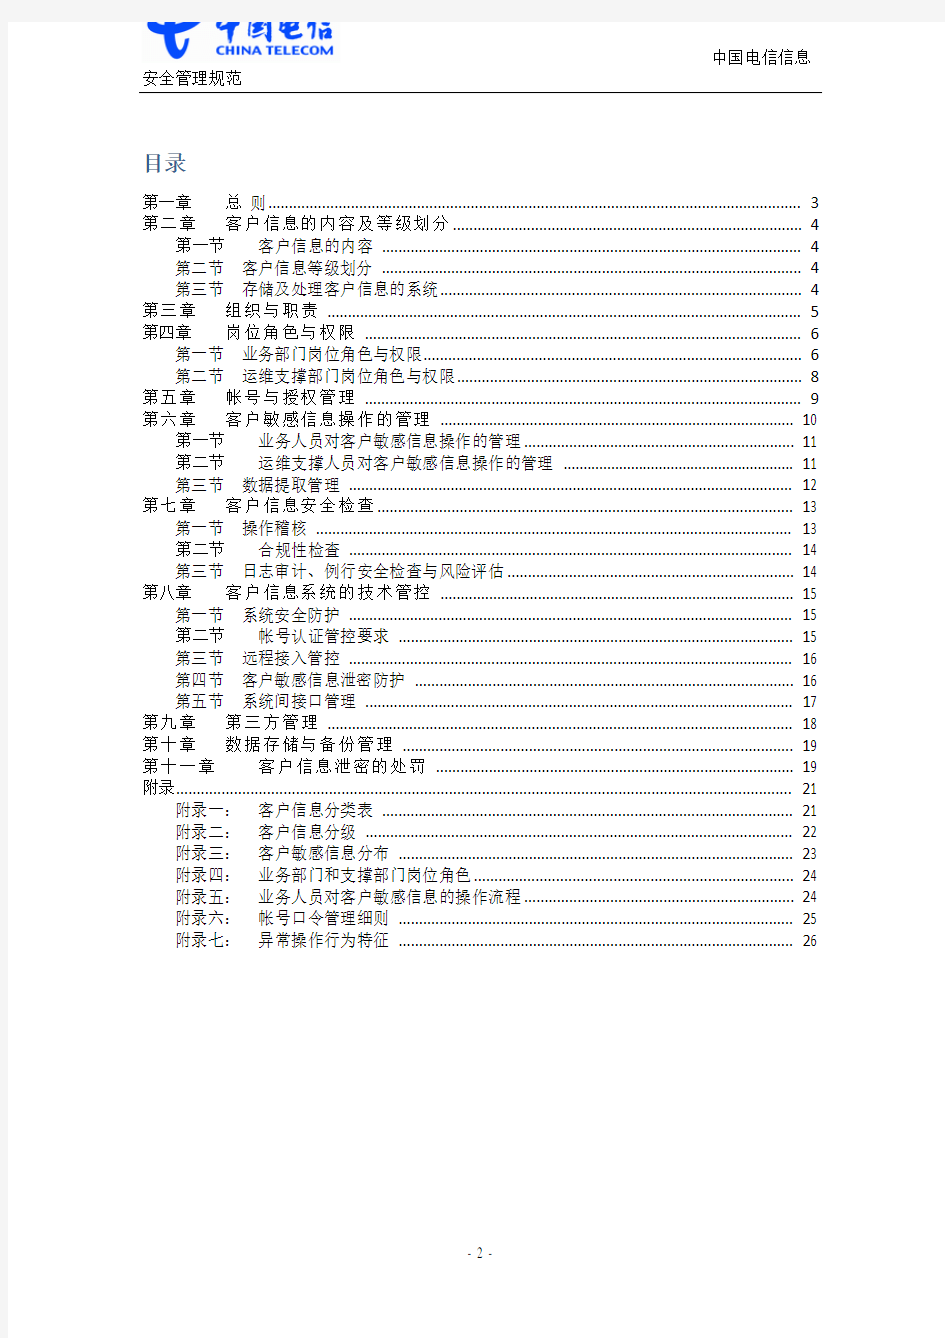 中国电信客户信息安全管理规范_v0.1_20101227